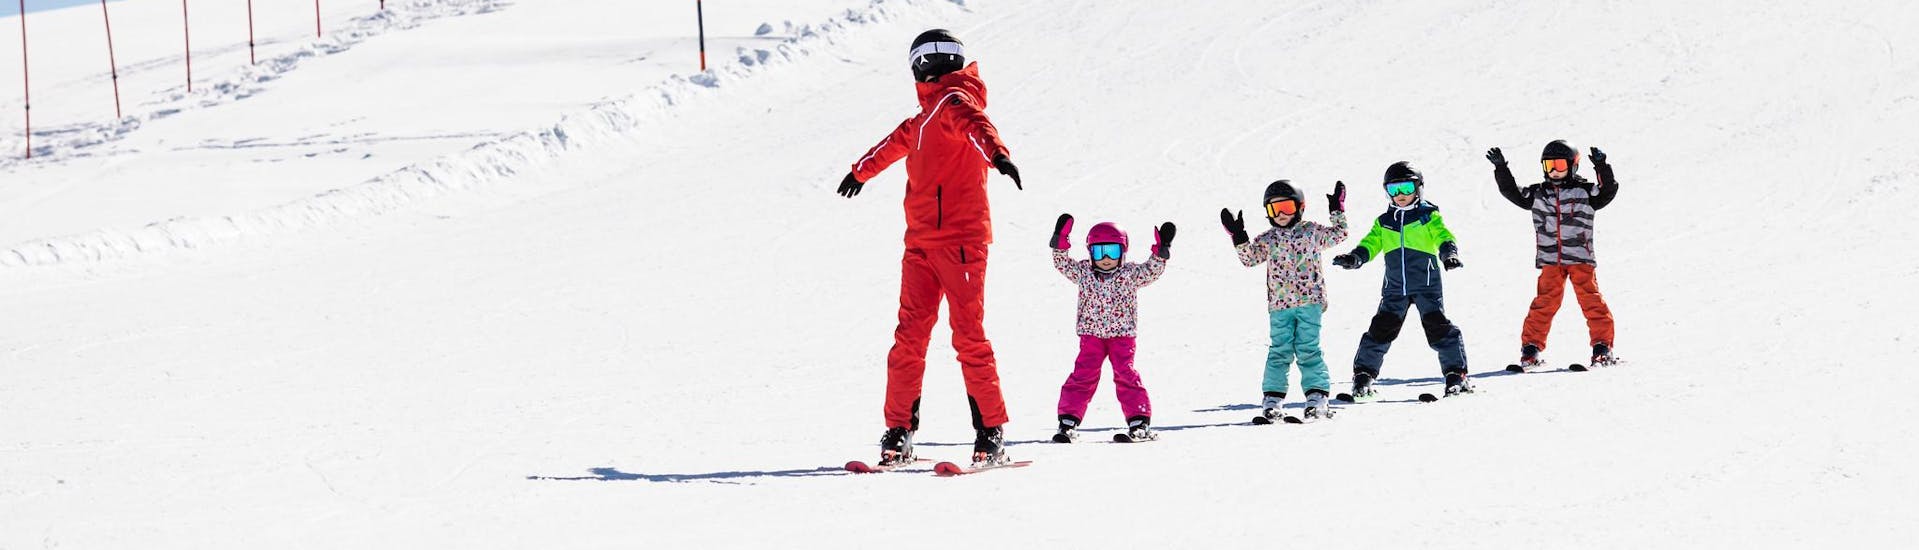 Instructor de esquí y niños esquiando por las pistas durante una clase de esquí.